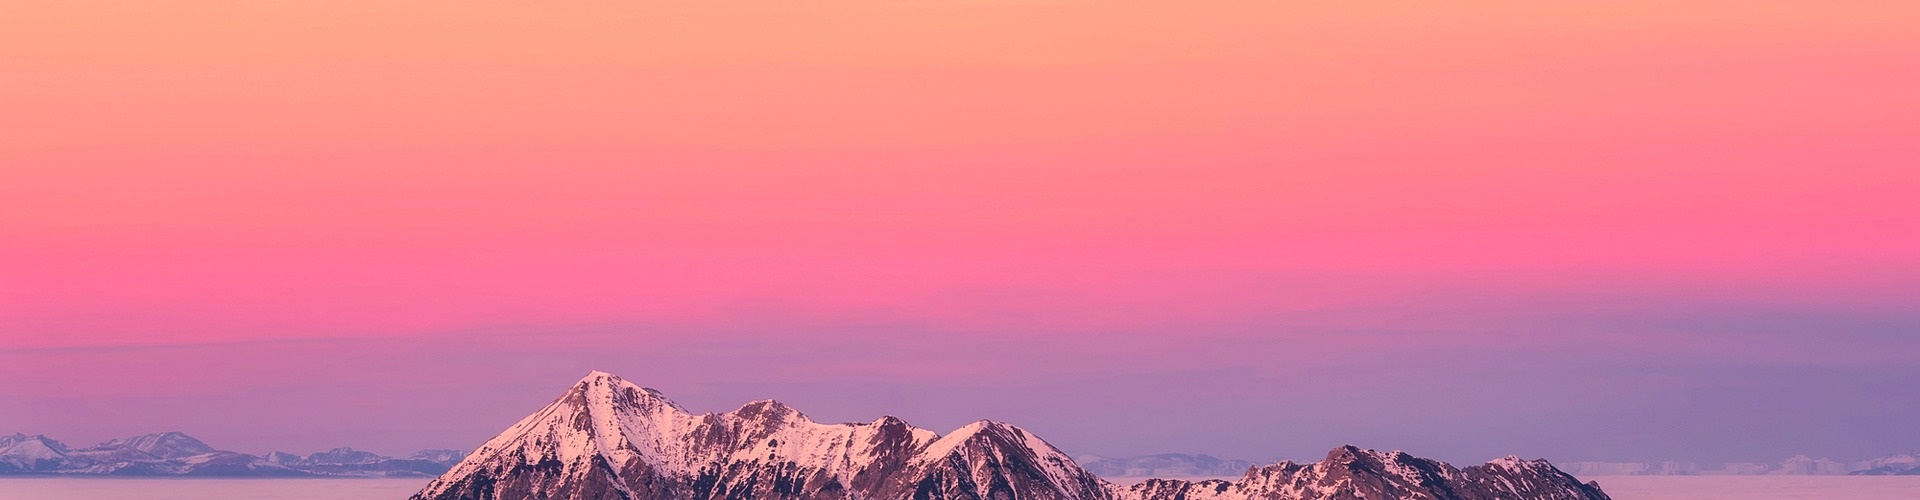 Himmel i skiftande orange, rosa och lila färg. I förgrunden syns snötäckta bergstoppar.